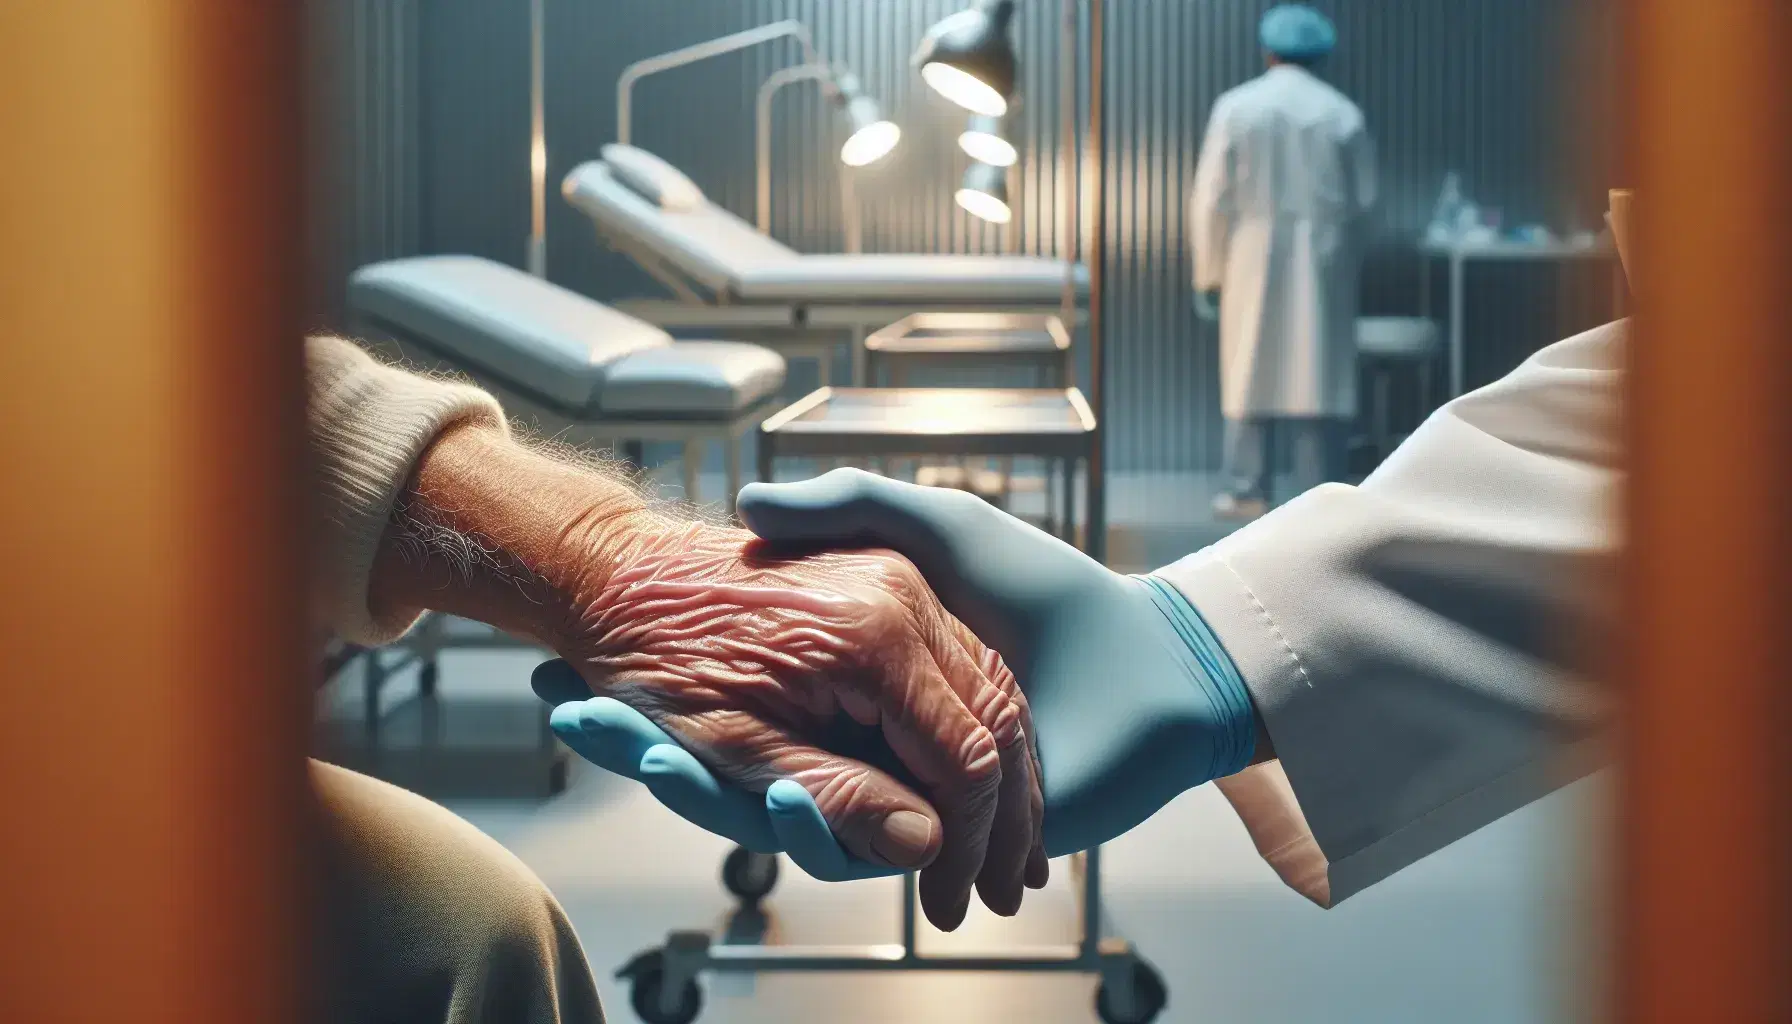 Manos de profesional de la salud en guante azul examinando con cuidado la mano arrugada de un paciente mayor en un entorno médico.